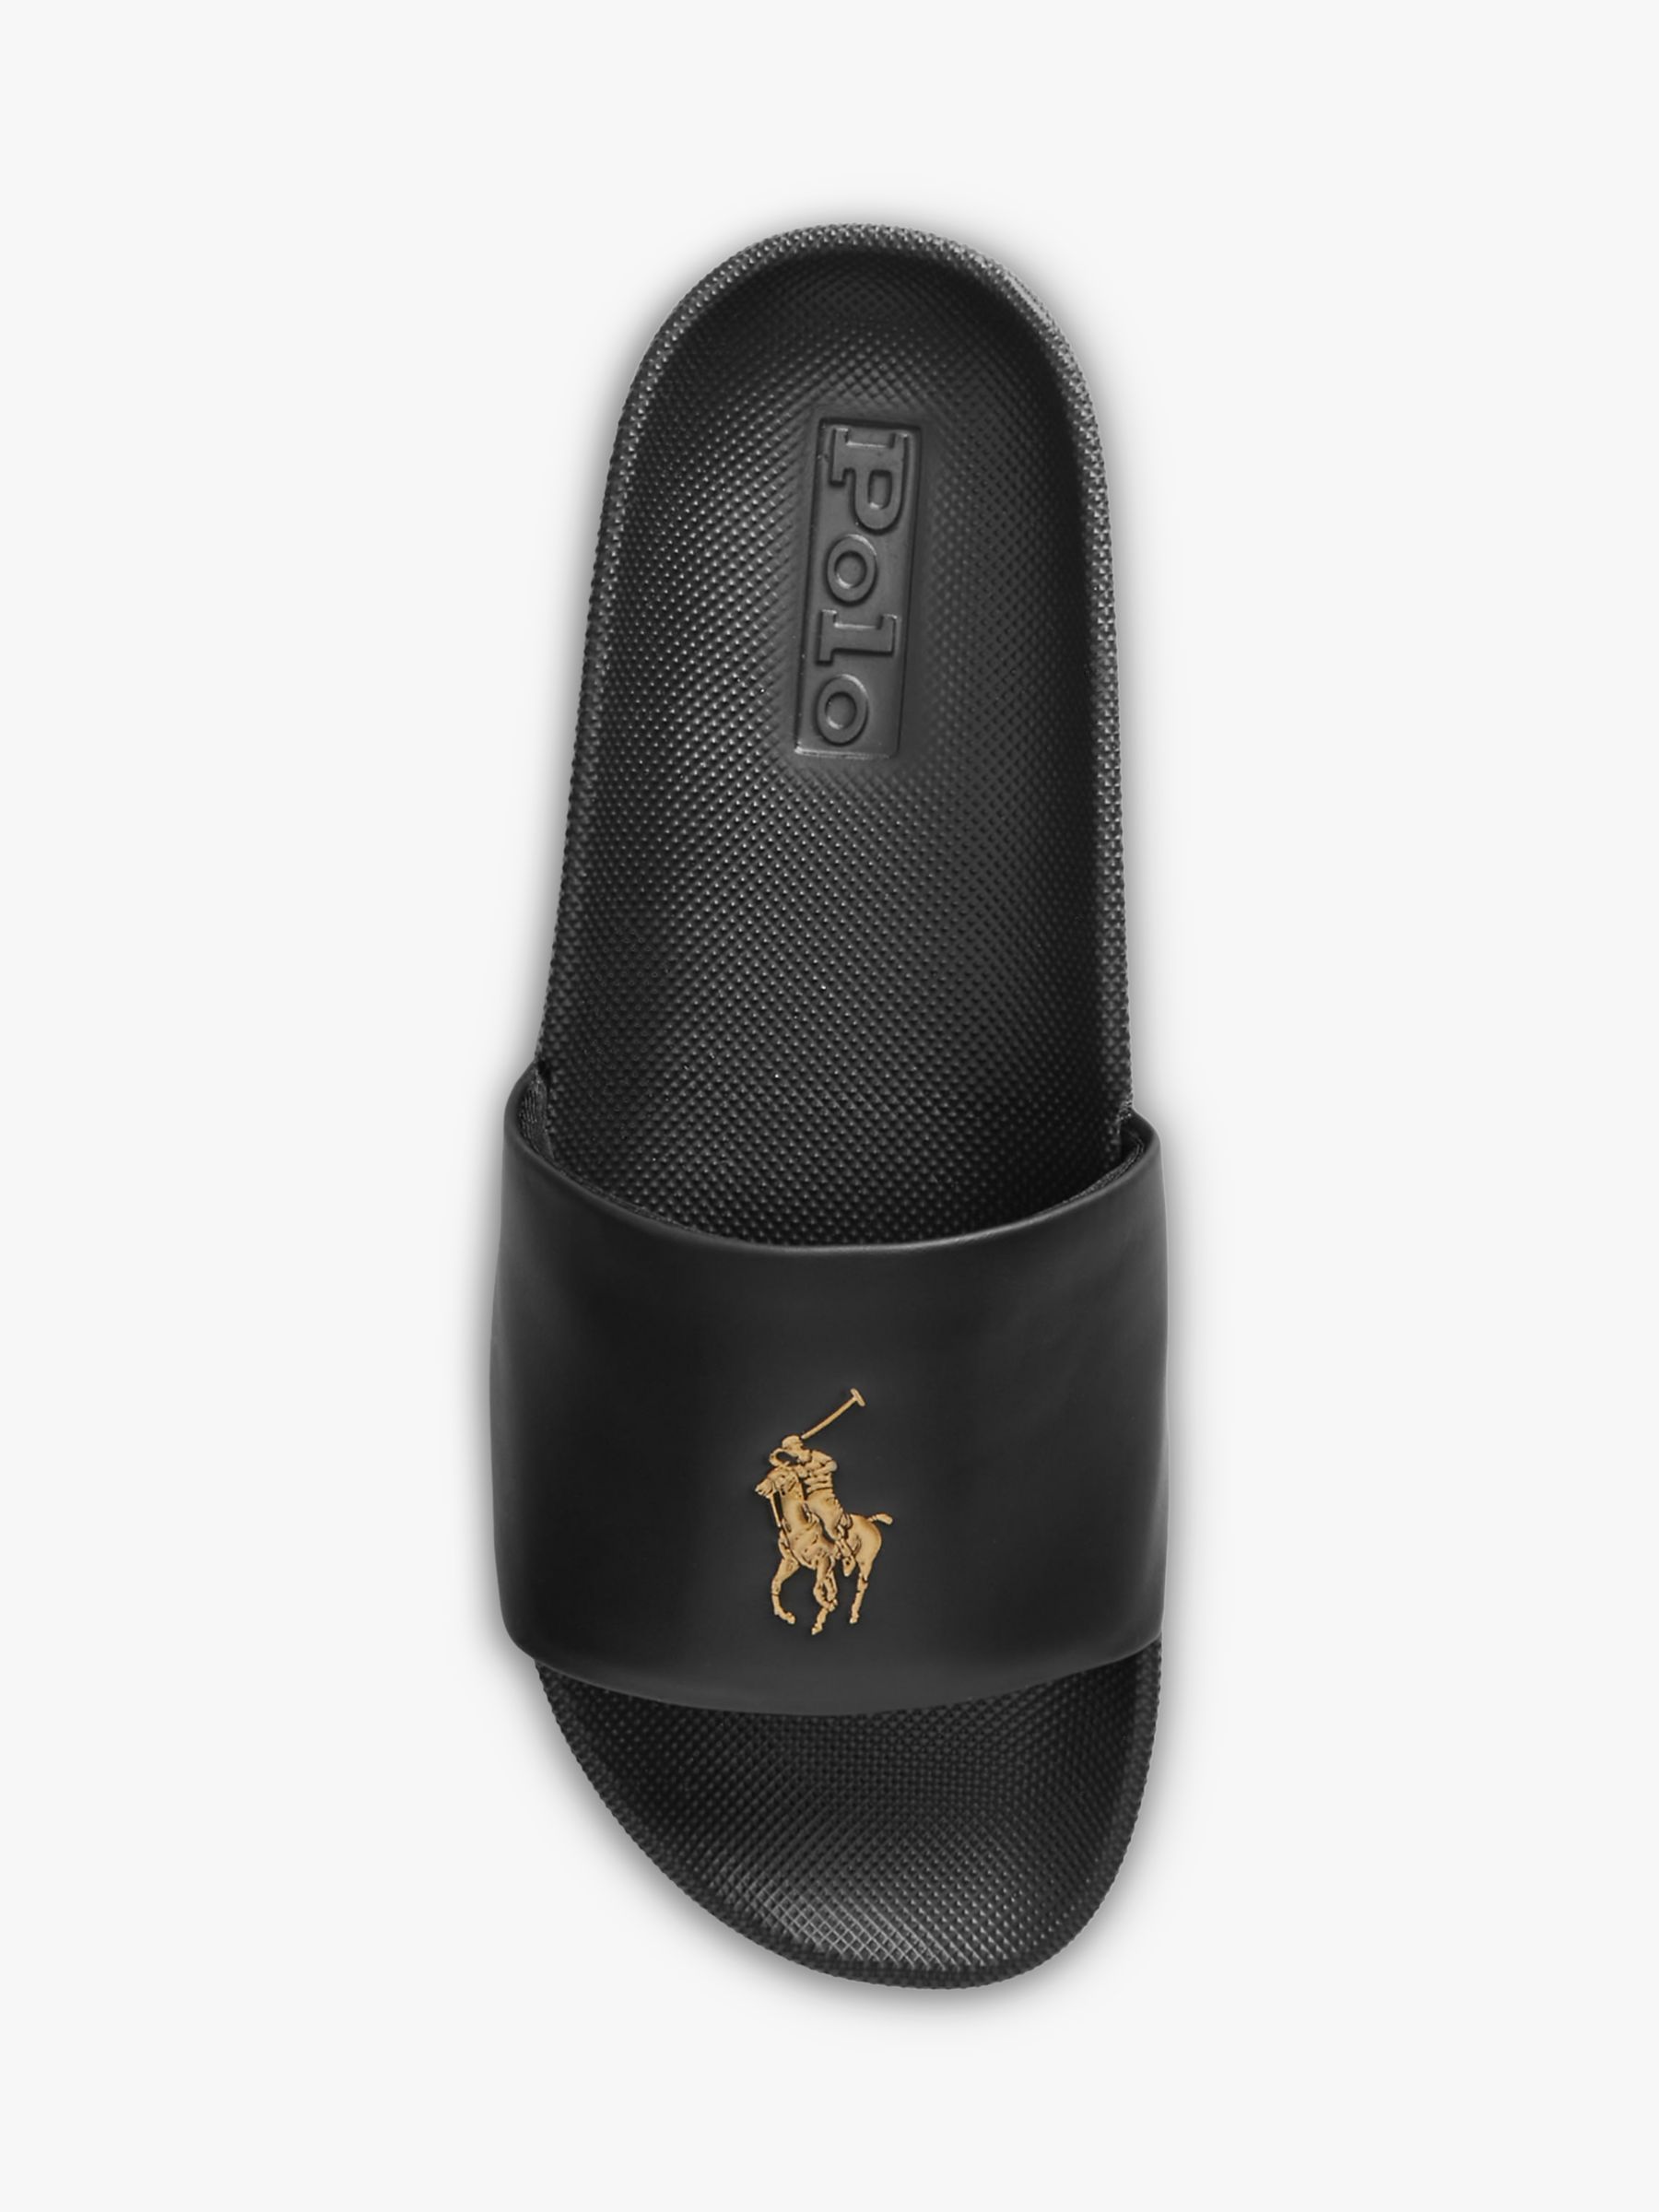 Polo Ralph Lauren Cayson Pony Slide Sandals, Black/Gold, 8